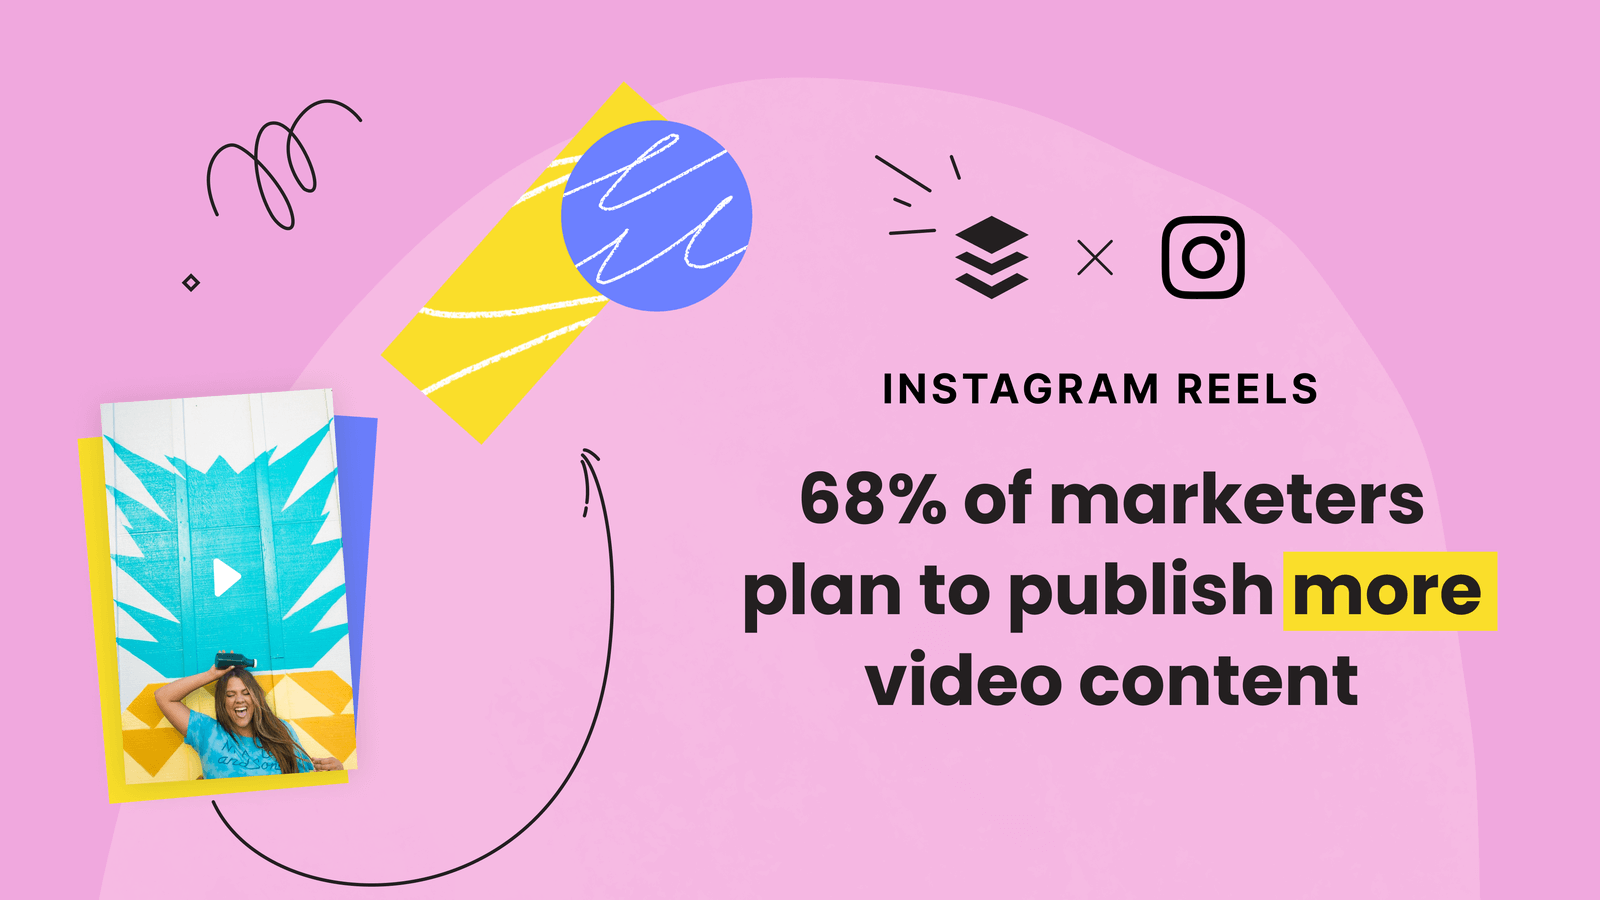 El 68% de los especialistas en marketing planean publicar más contenido de video en Instagram